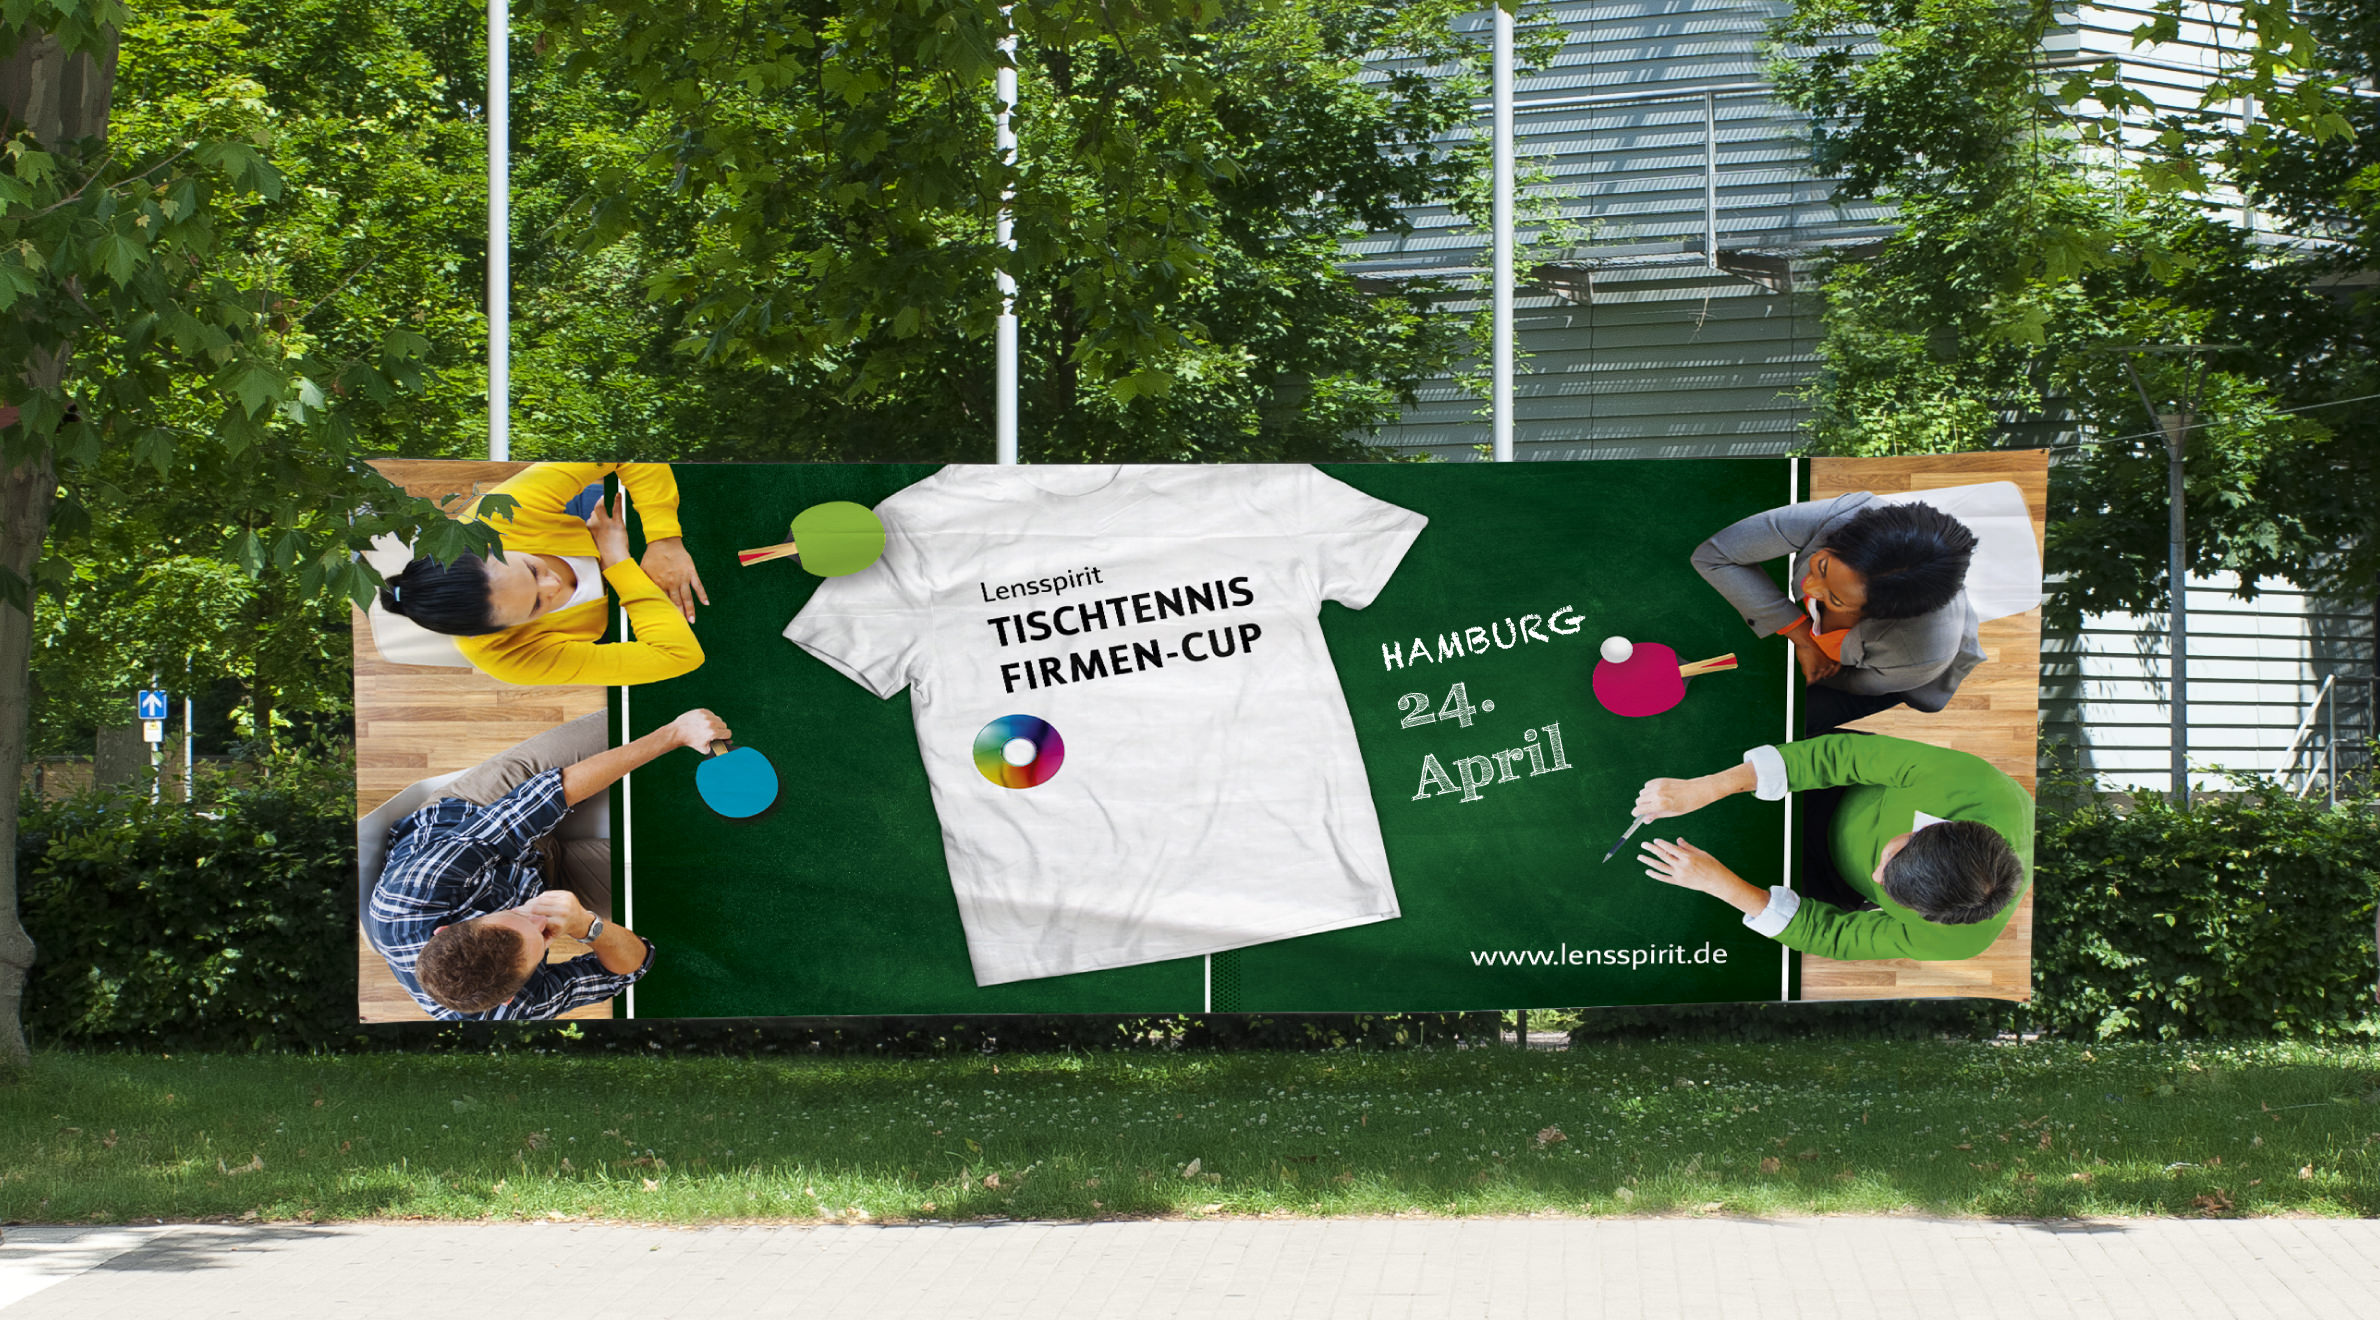 Lensspirit - Tischtennis Firmen-Cup, Banner